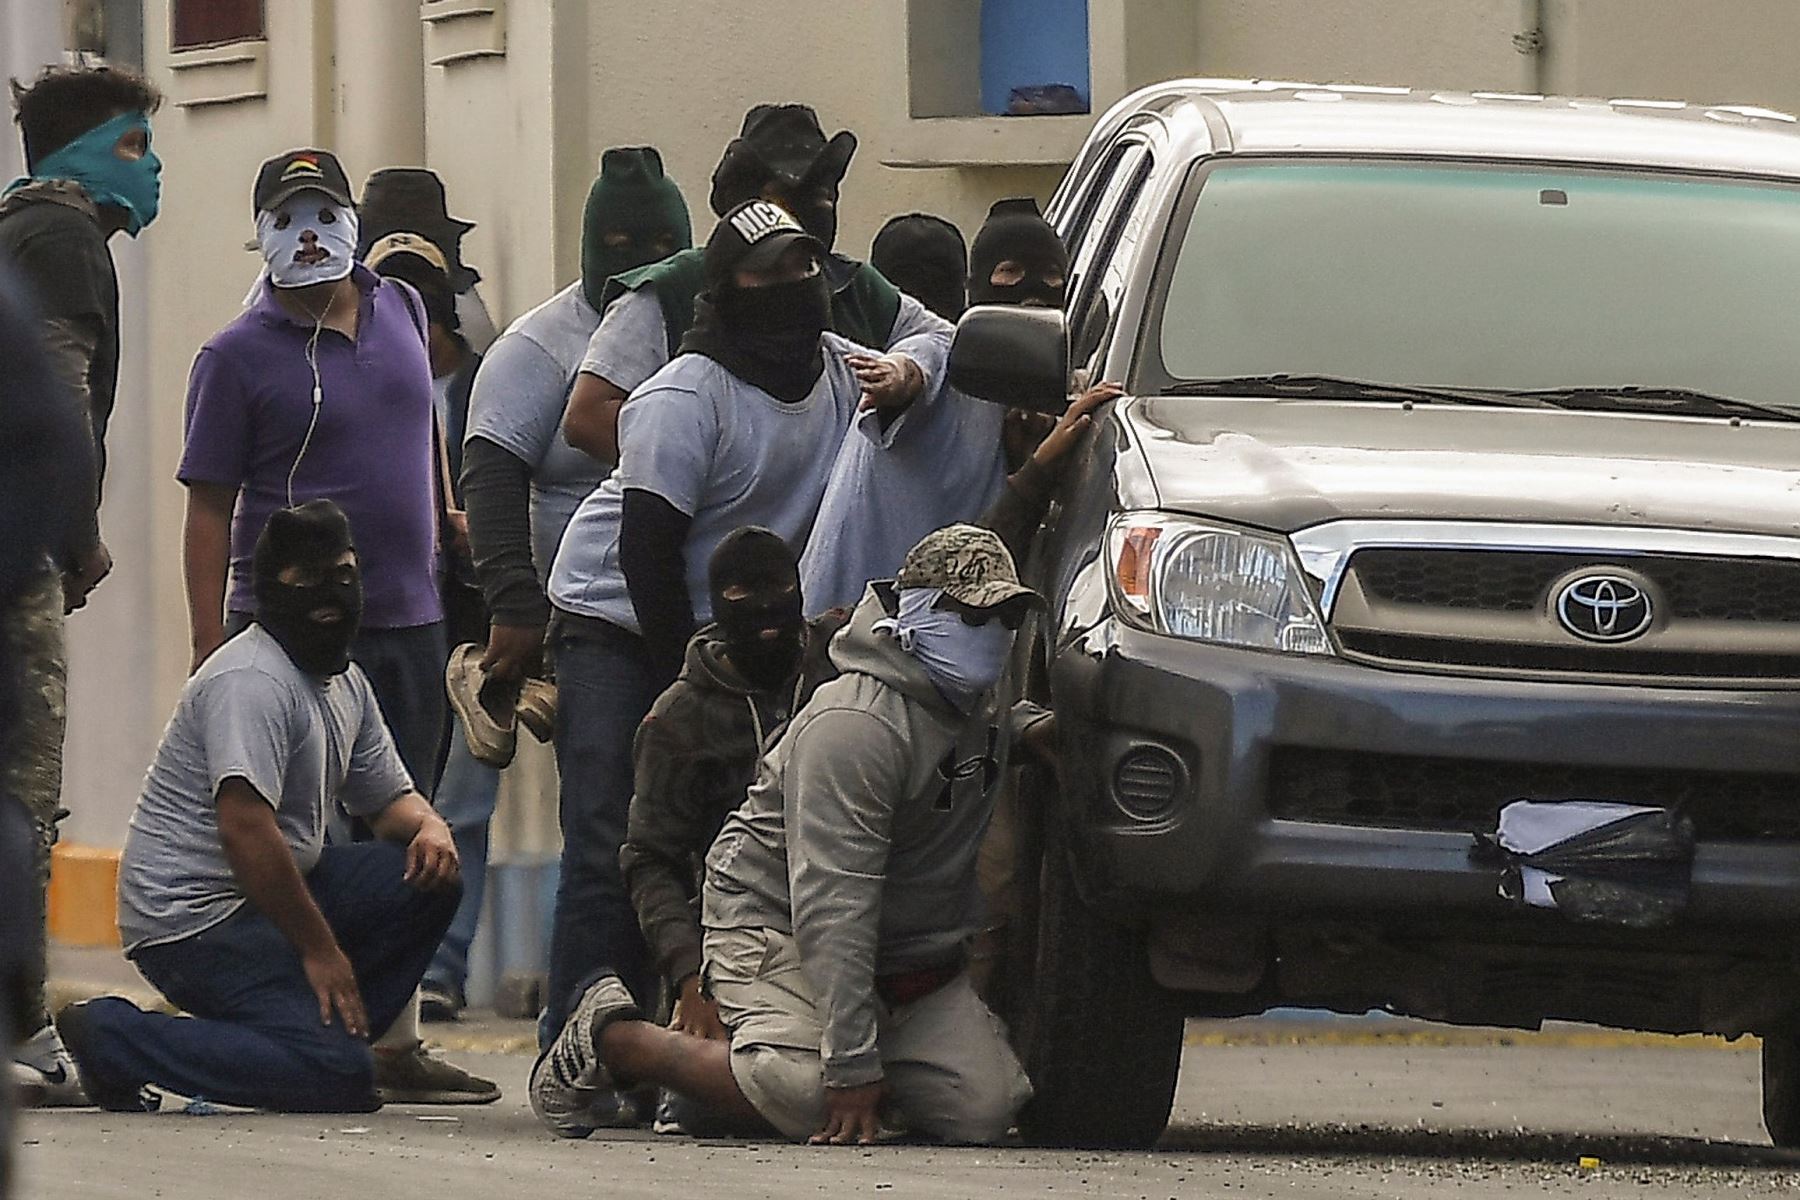 Encapuchados simpatizantes del presidente Daniel Ortega agredieron a sacerdotes y periodistas